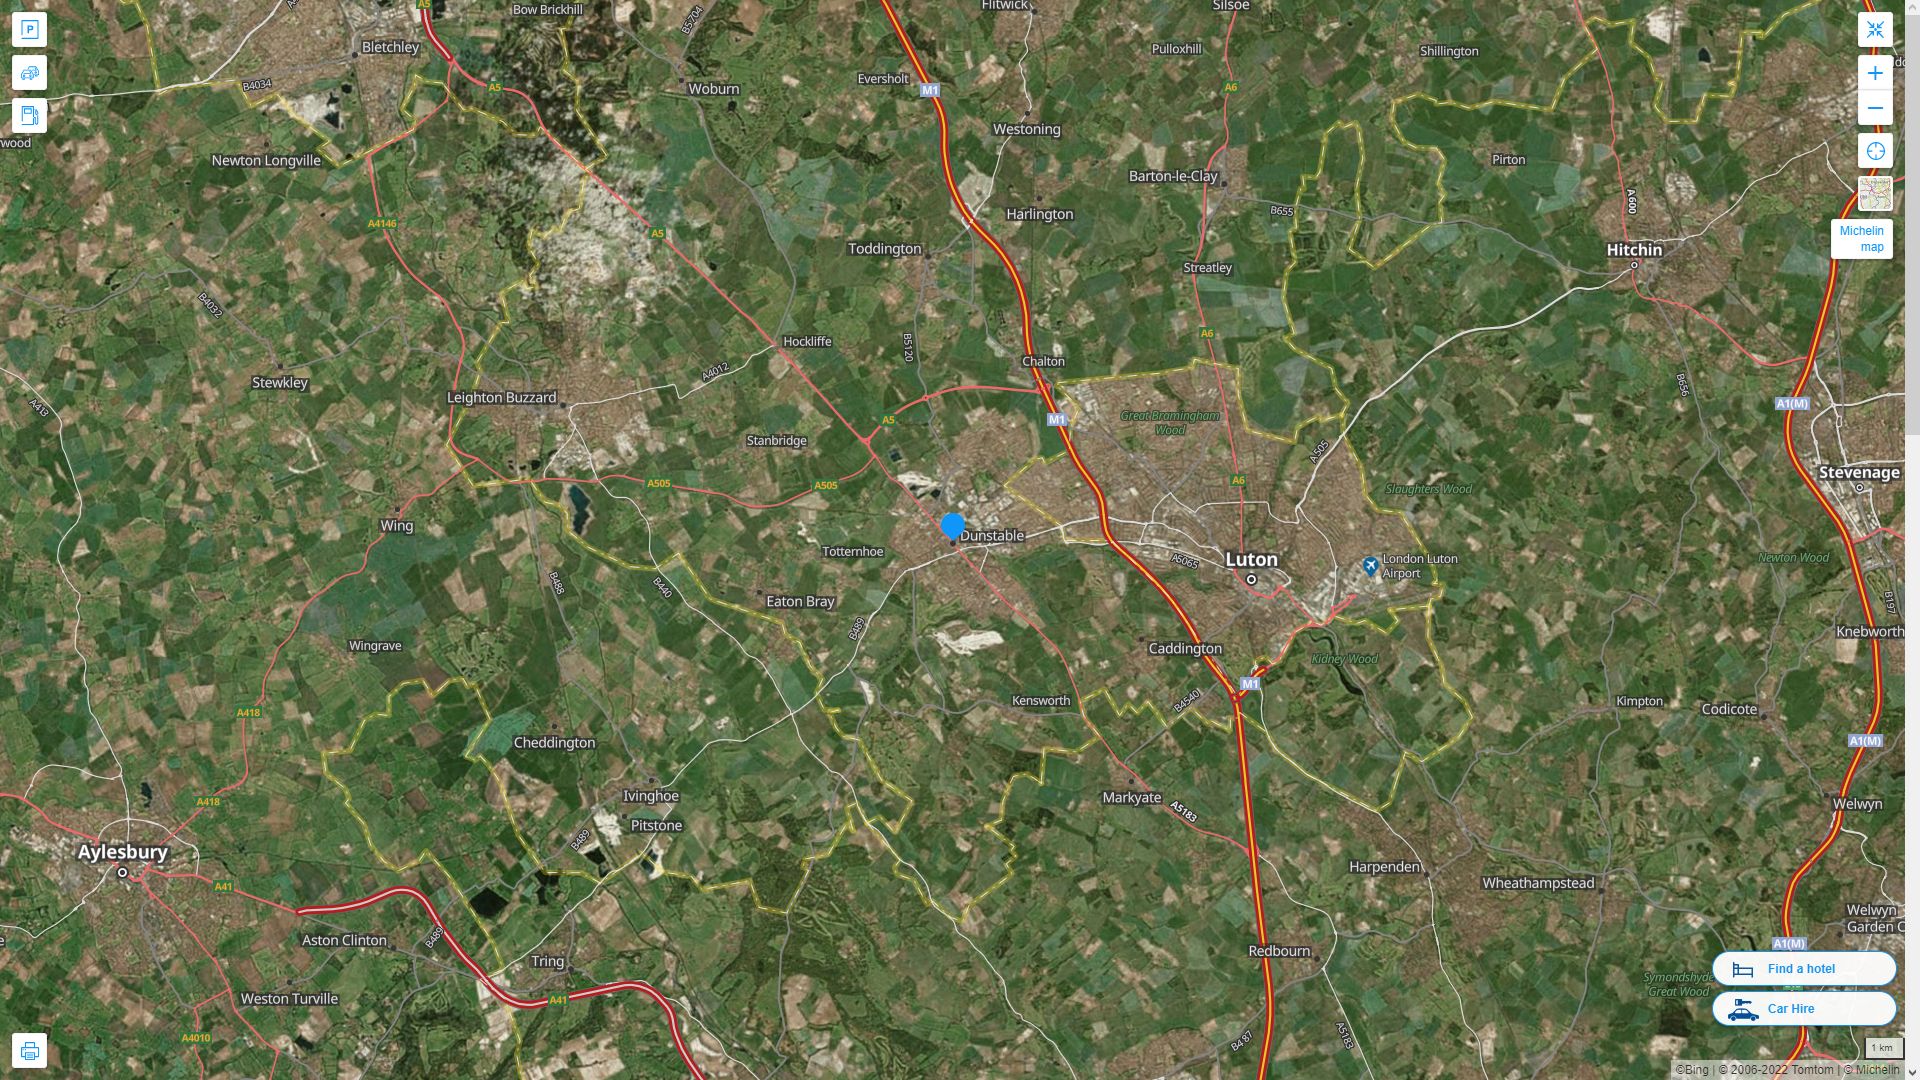 Dunstable Royaume Uni Autoroute et carte routiere avec vue satellite